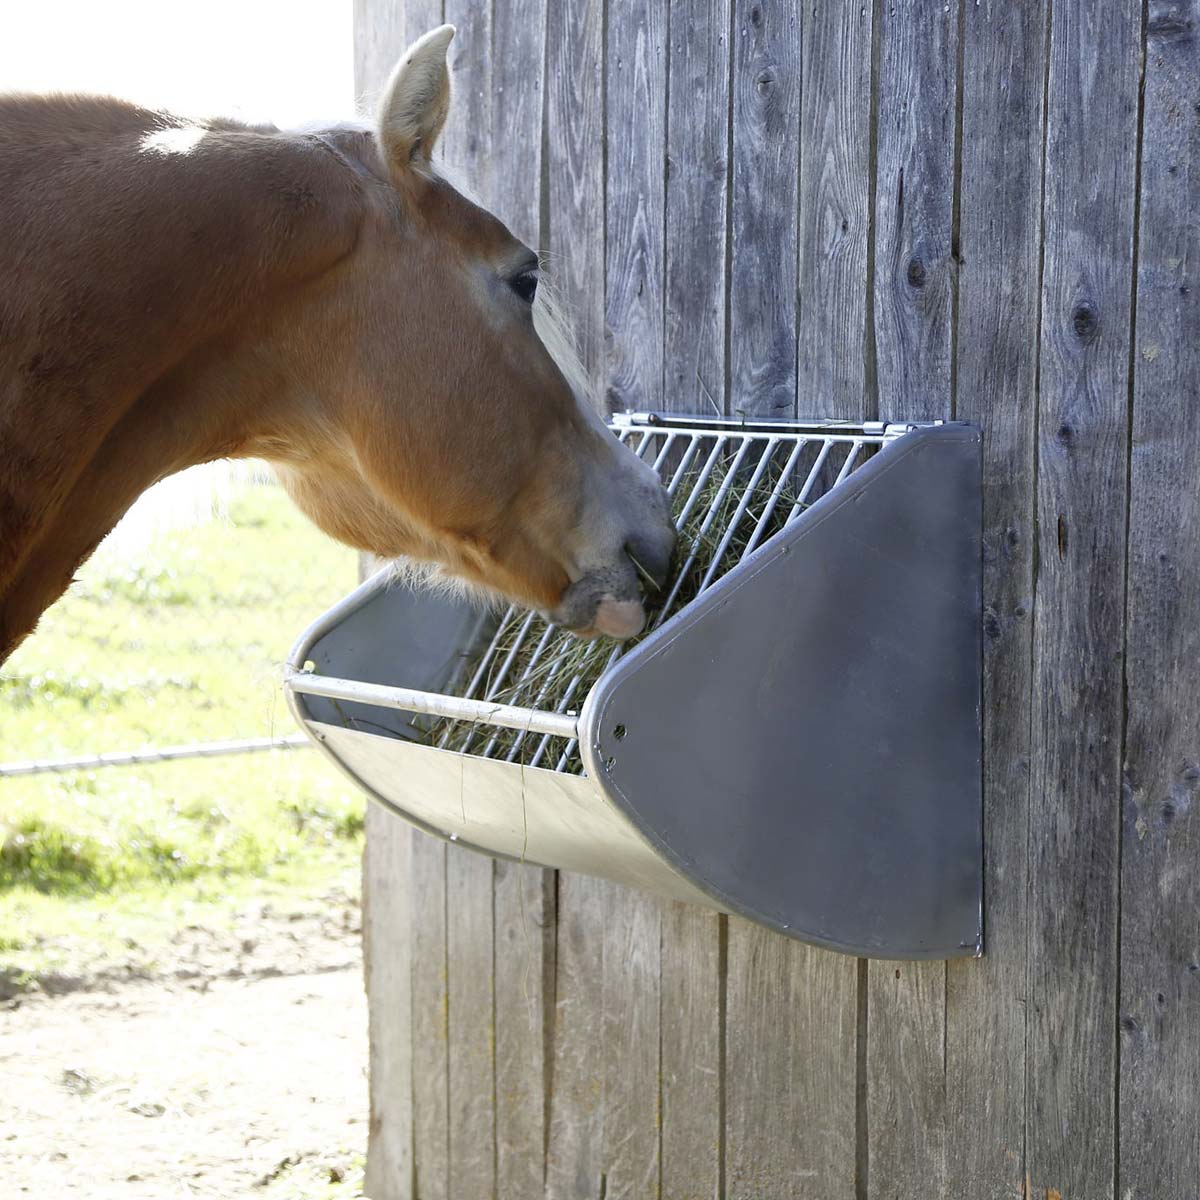 Mangiatoia a parete per cavalli con griglia salvaforaggio